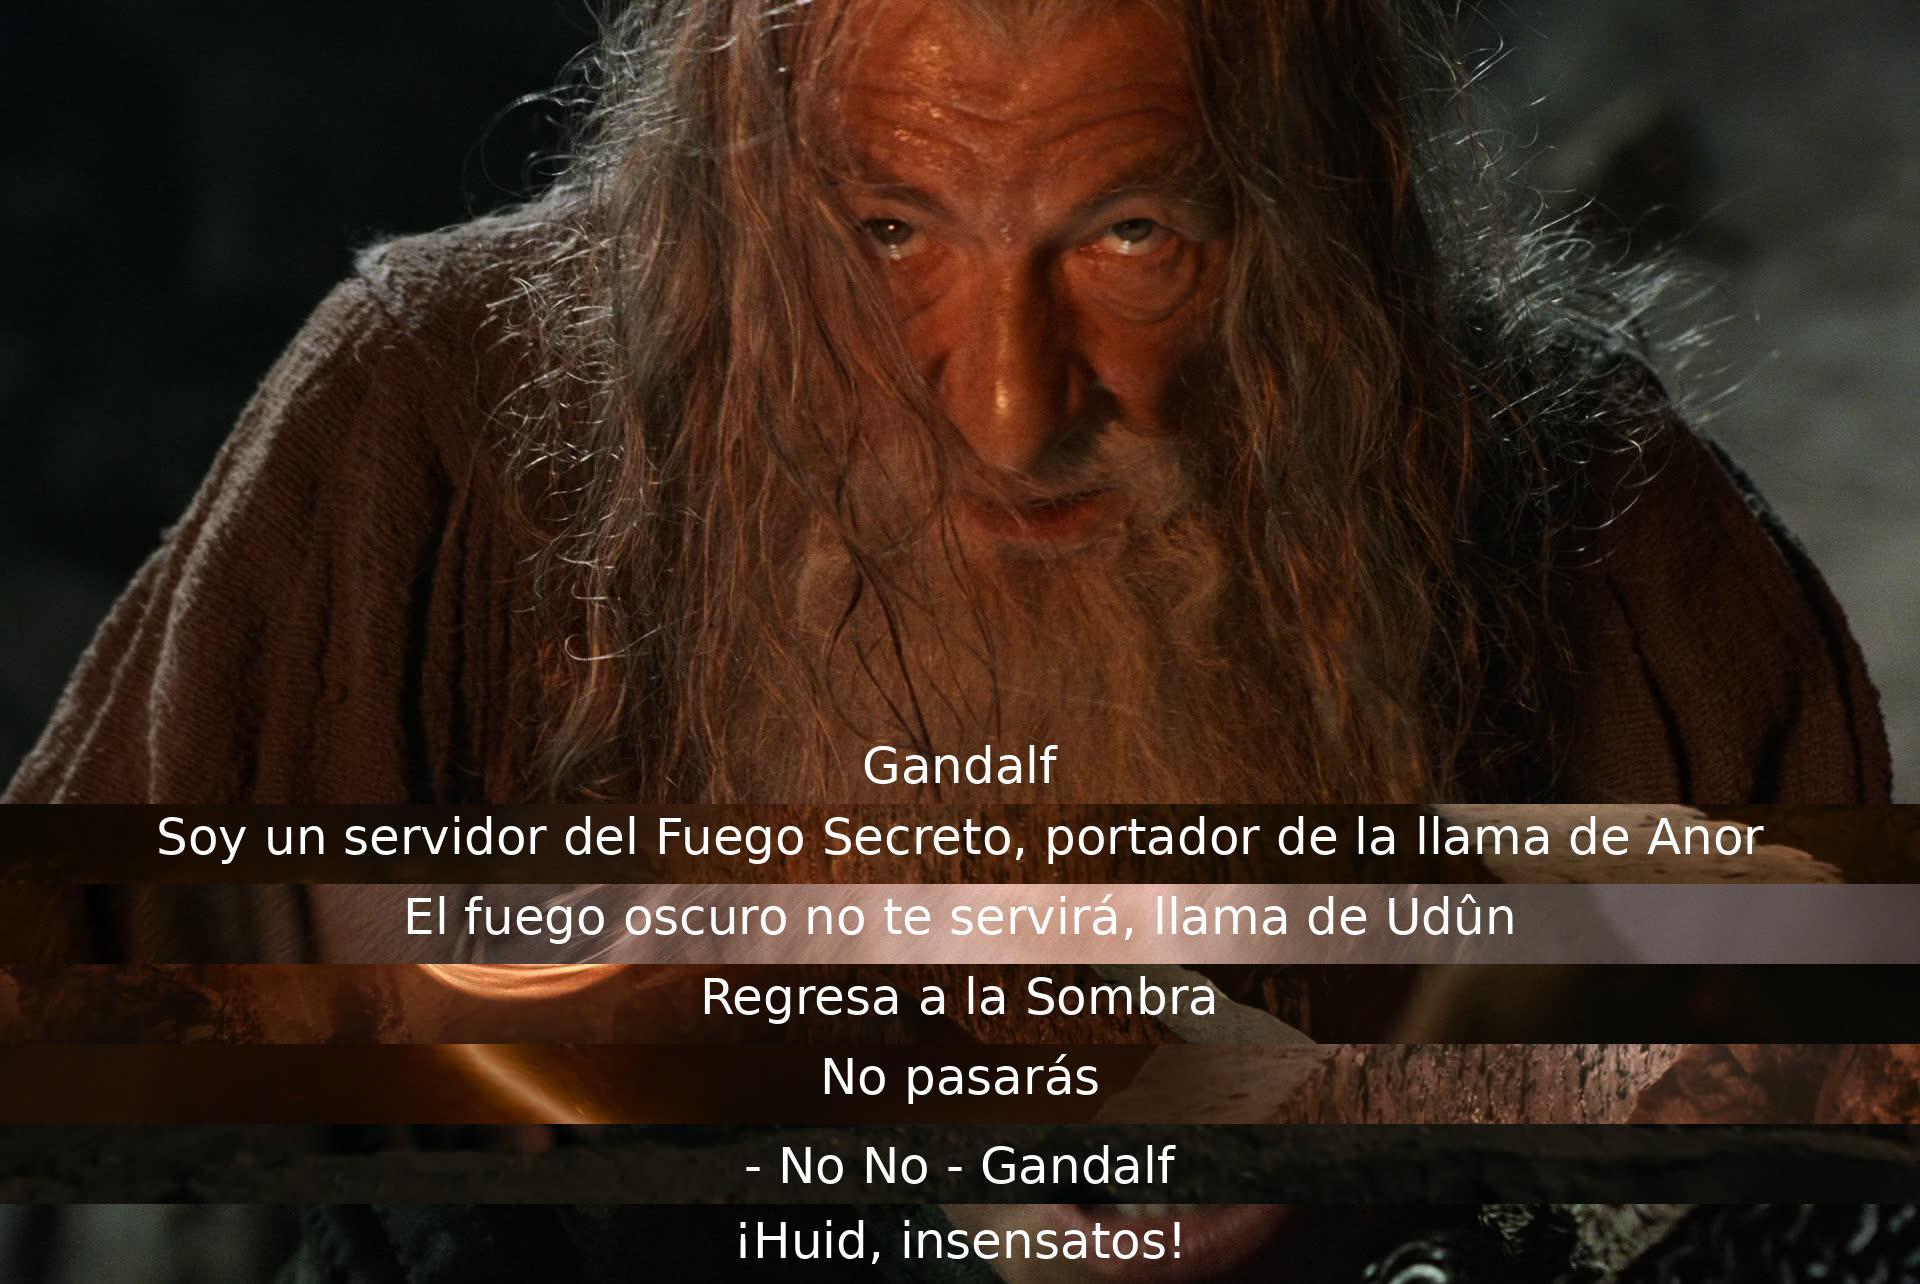 Gandalf se identifica como portador de la llama de Anor y enfrenta al fuego oscuro. Advierte al enemigo que no pasará, antes de ordenar a sus compañeros que huyan.